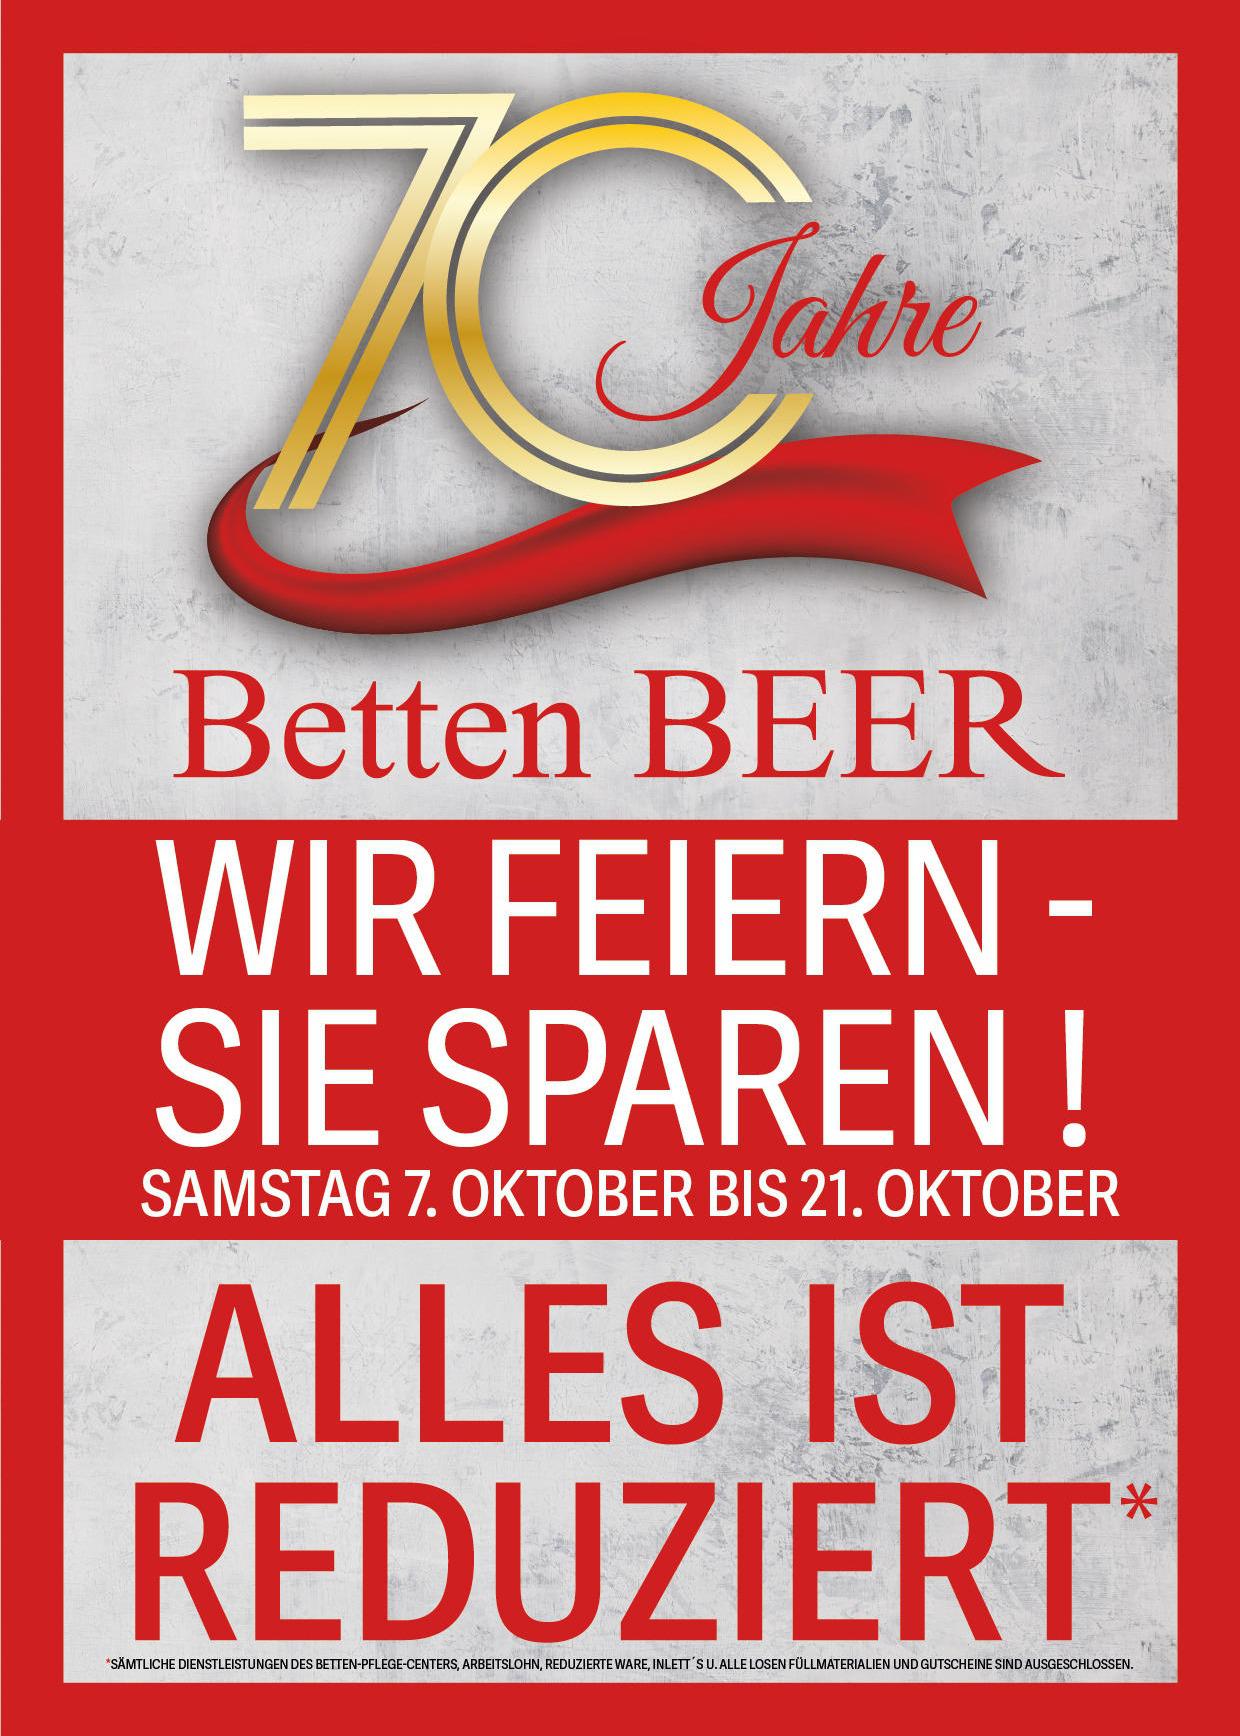 Bild der Betten Beer GmbH